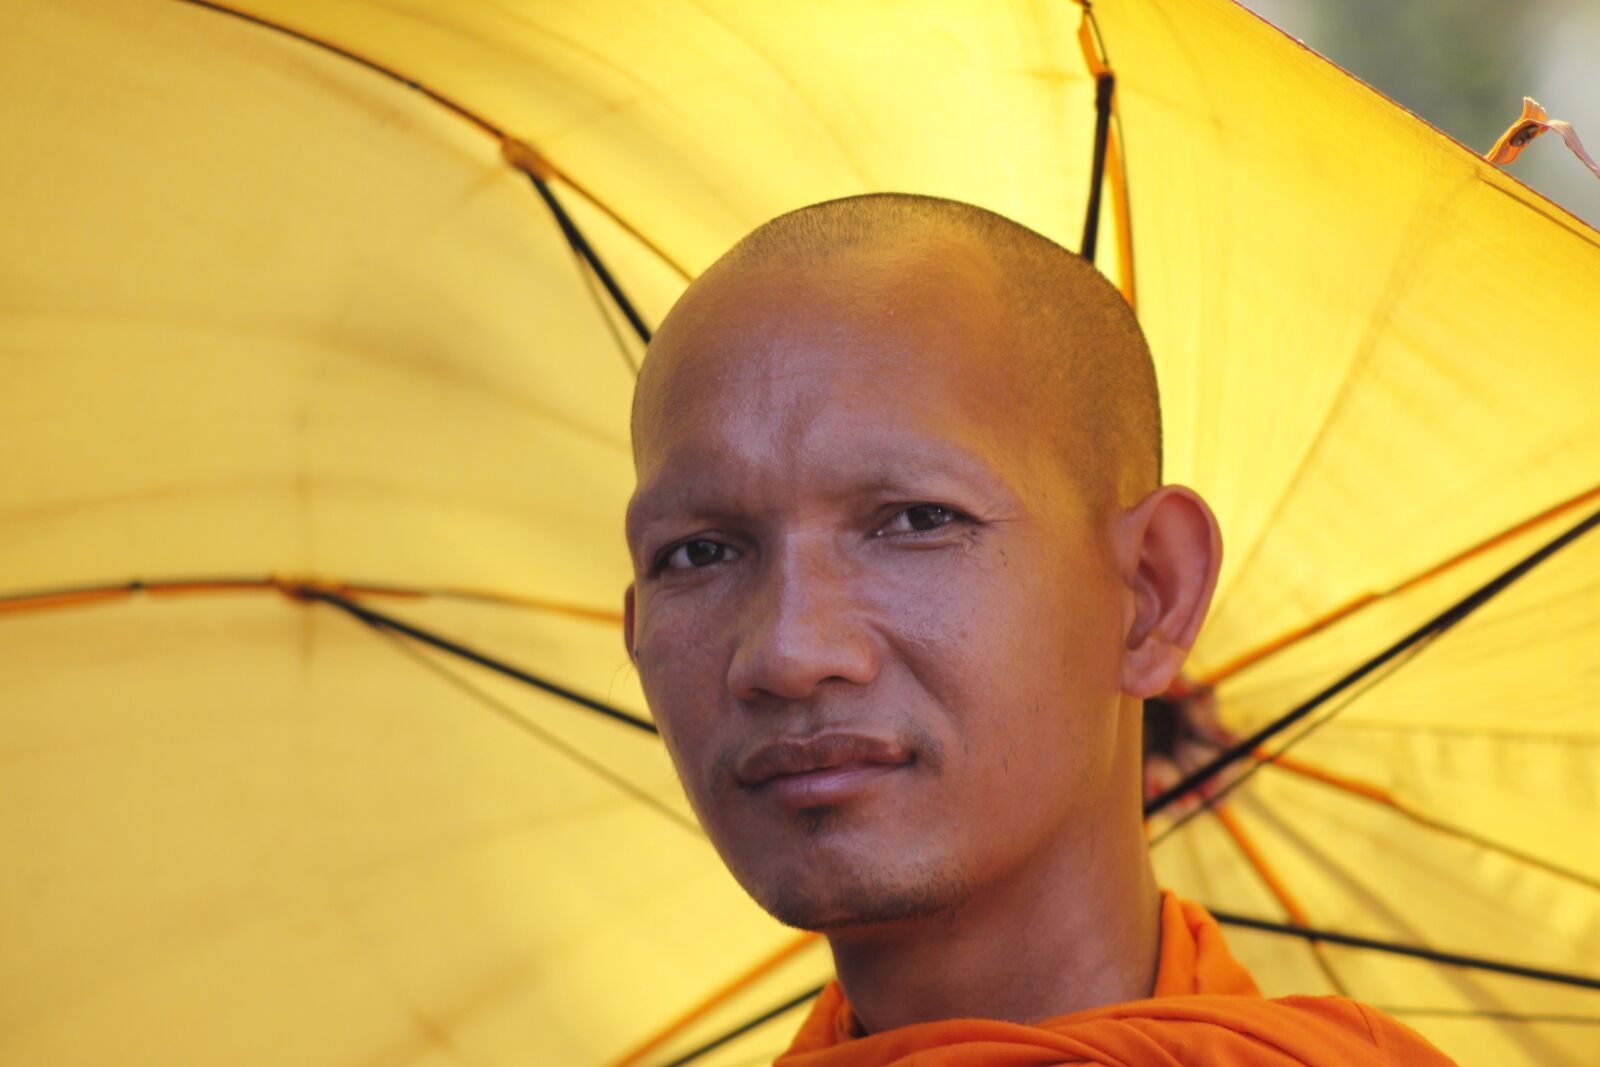 Canon EOS 50D sample photo. "Khmer, monk, cambodia" photography